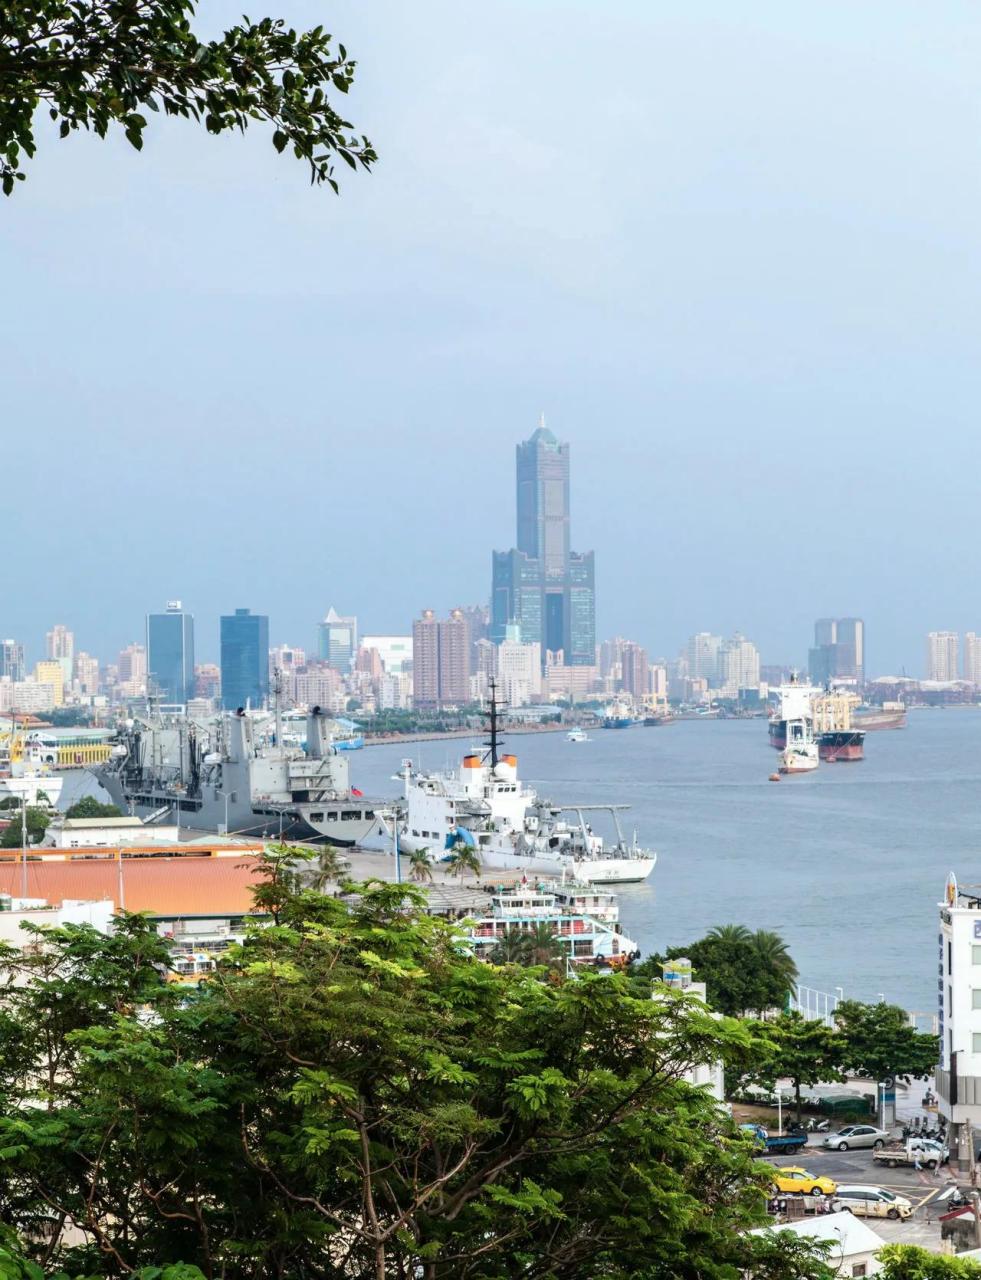 中国台湾省高雄市85大楼,紧邻高雄港码头,这栋楼一共有85层,高378米